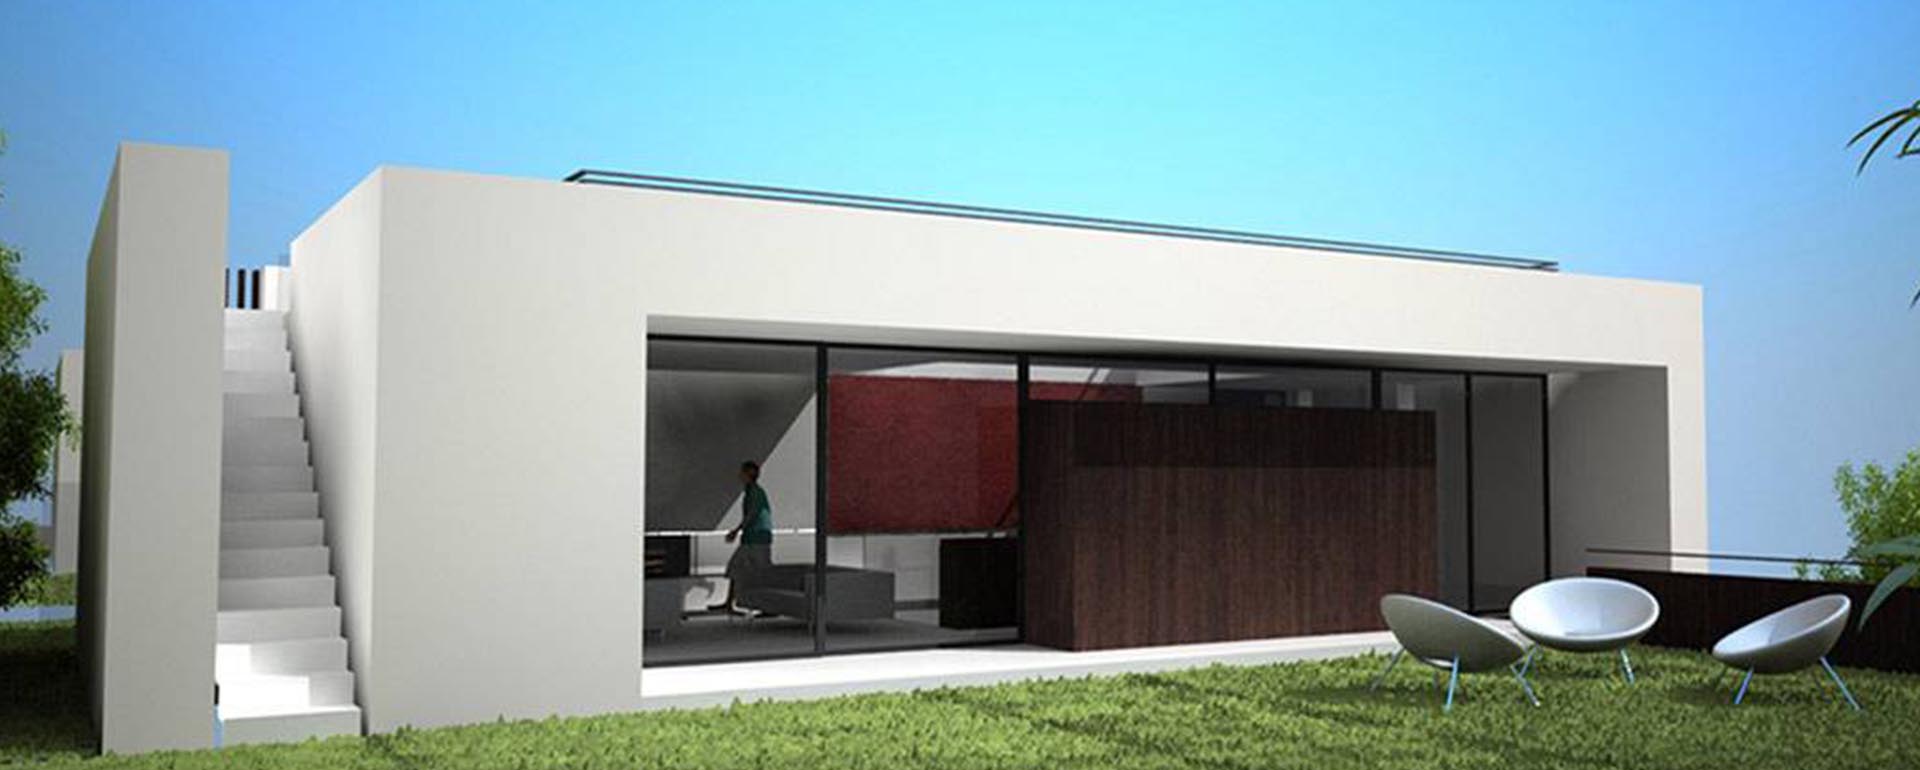 studio_architetto_mazzer-velletri_roma_progetti_residenziale_velletri_1